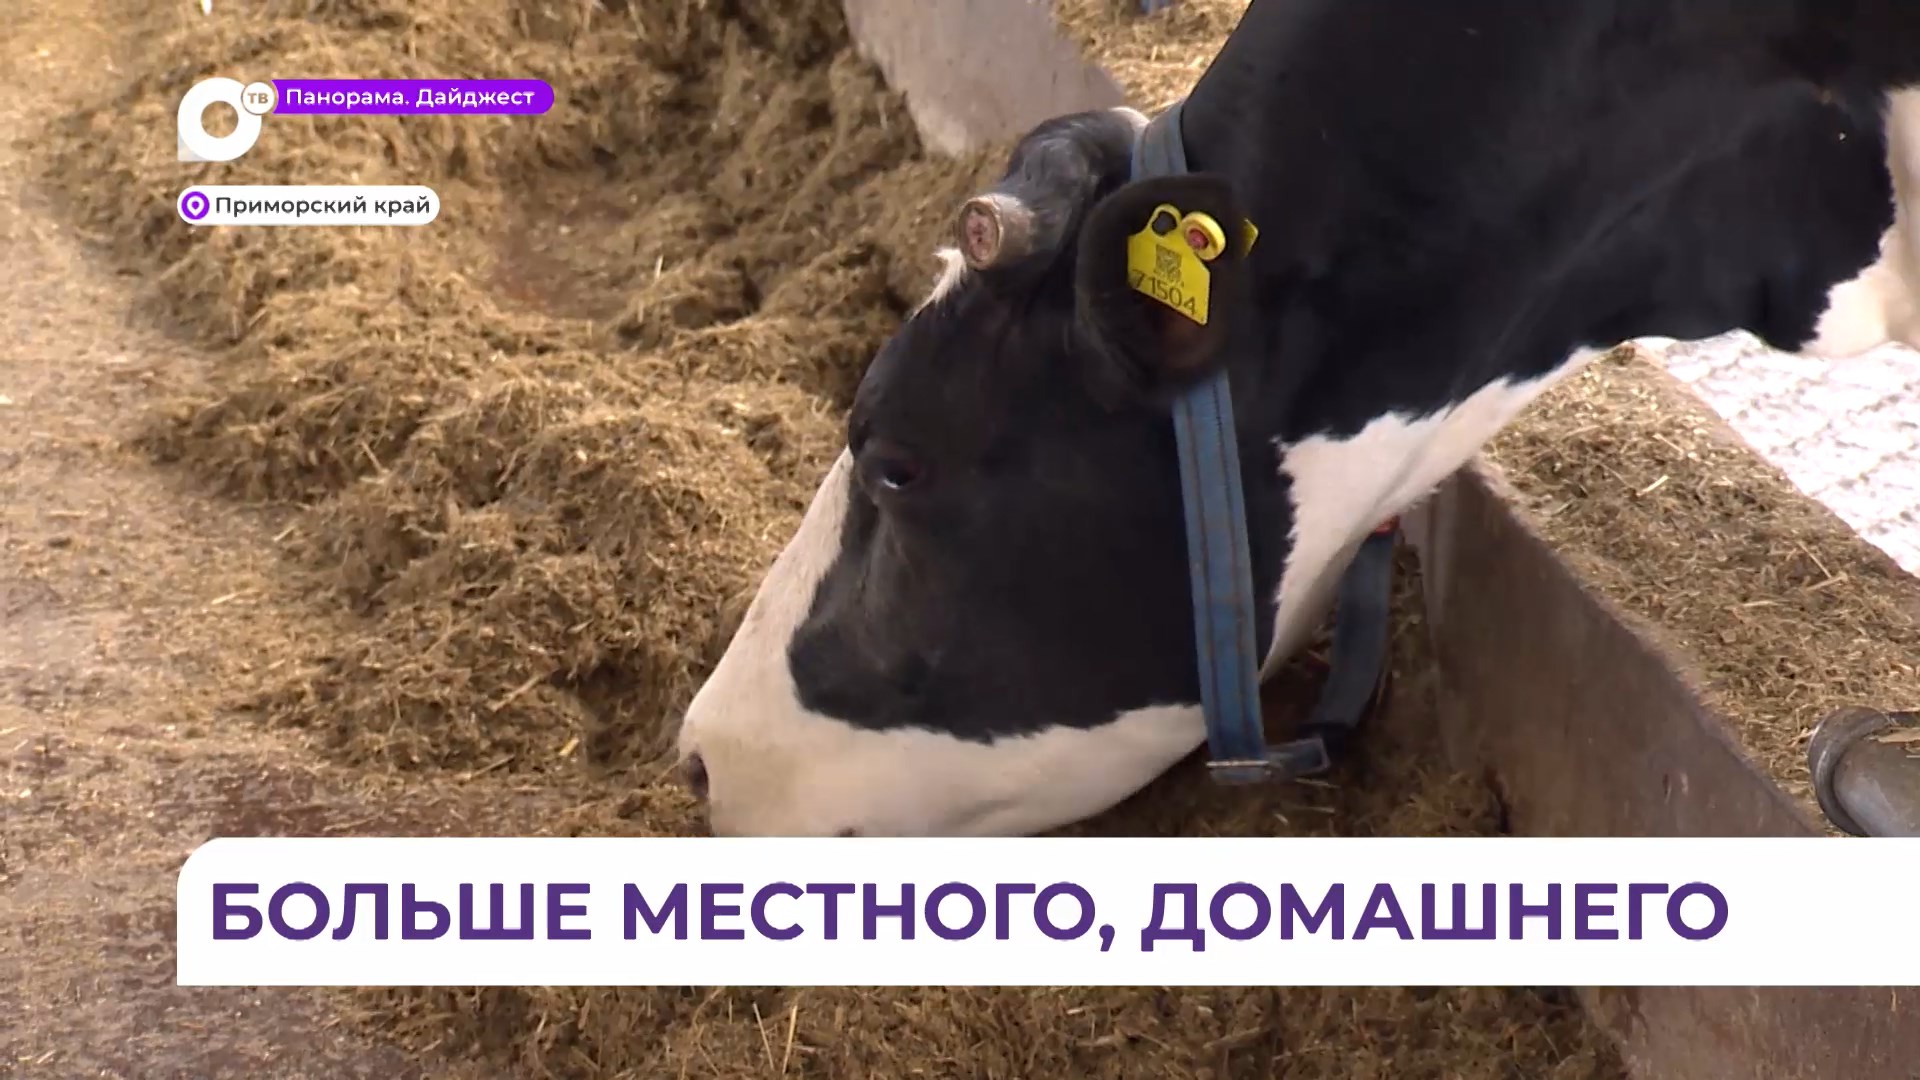 40 миллионов рублей могут получить аграрии Приморья на создание семейной фермы